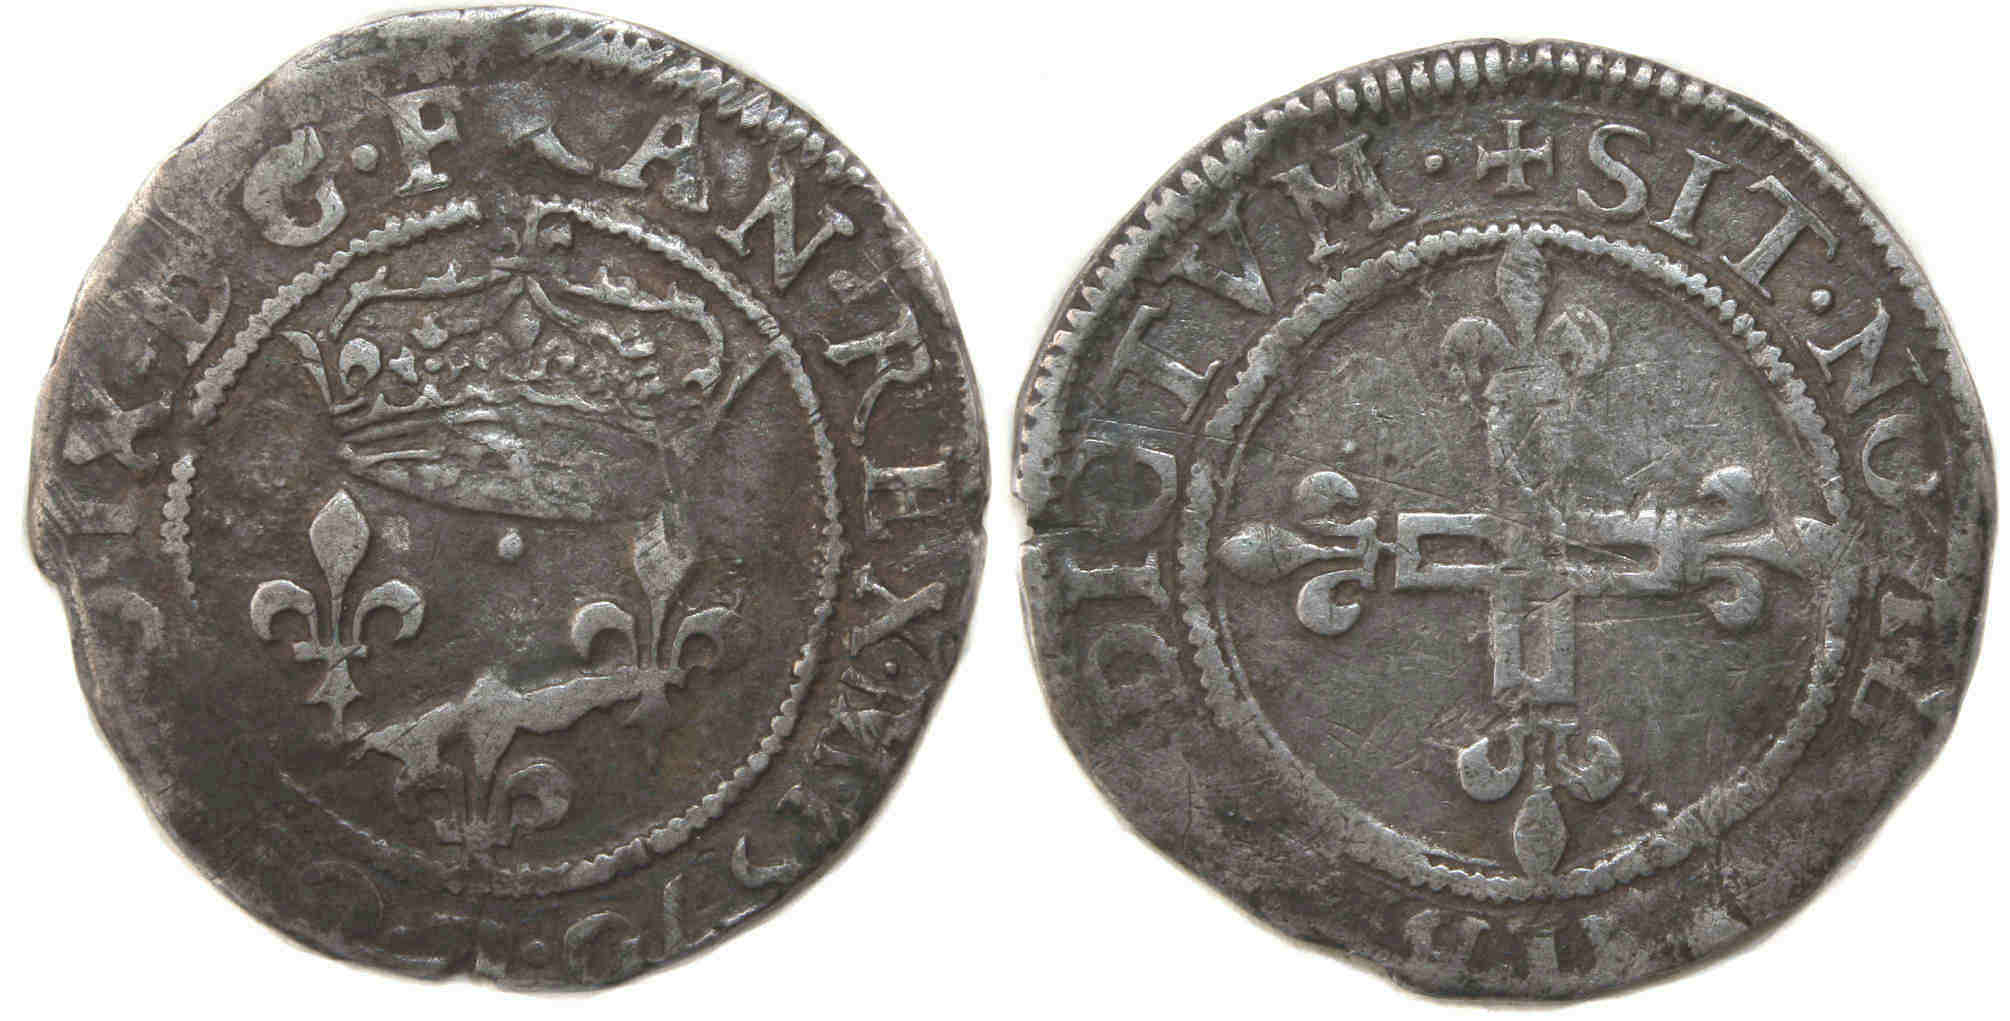 Monnaies royales francaises CHARLES IX Double sol 1570 VILLENEUVE